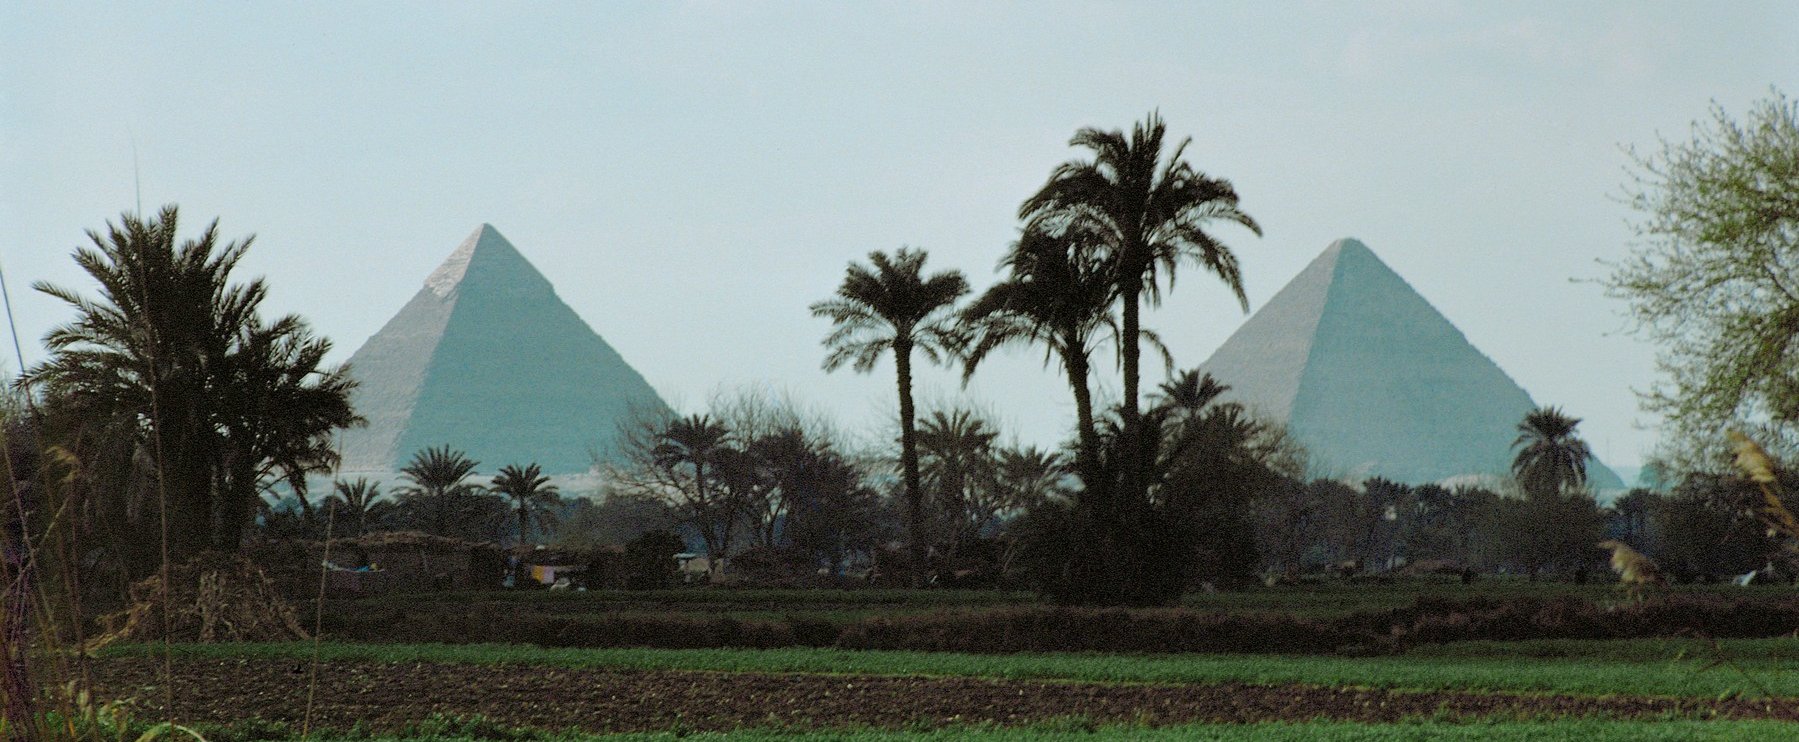 Az egyiptomi piramisok másik oldalát soha nem láthatod, egy fotó bizonyítja a valóságot